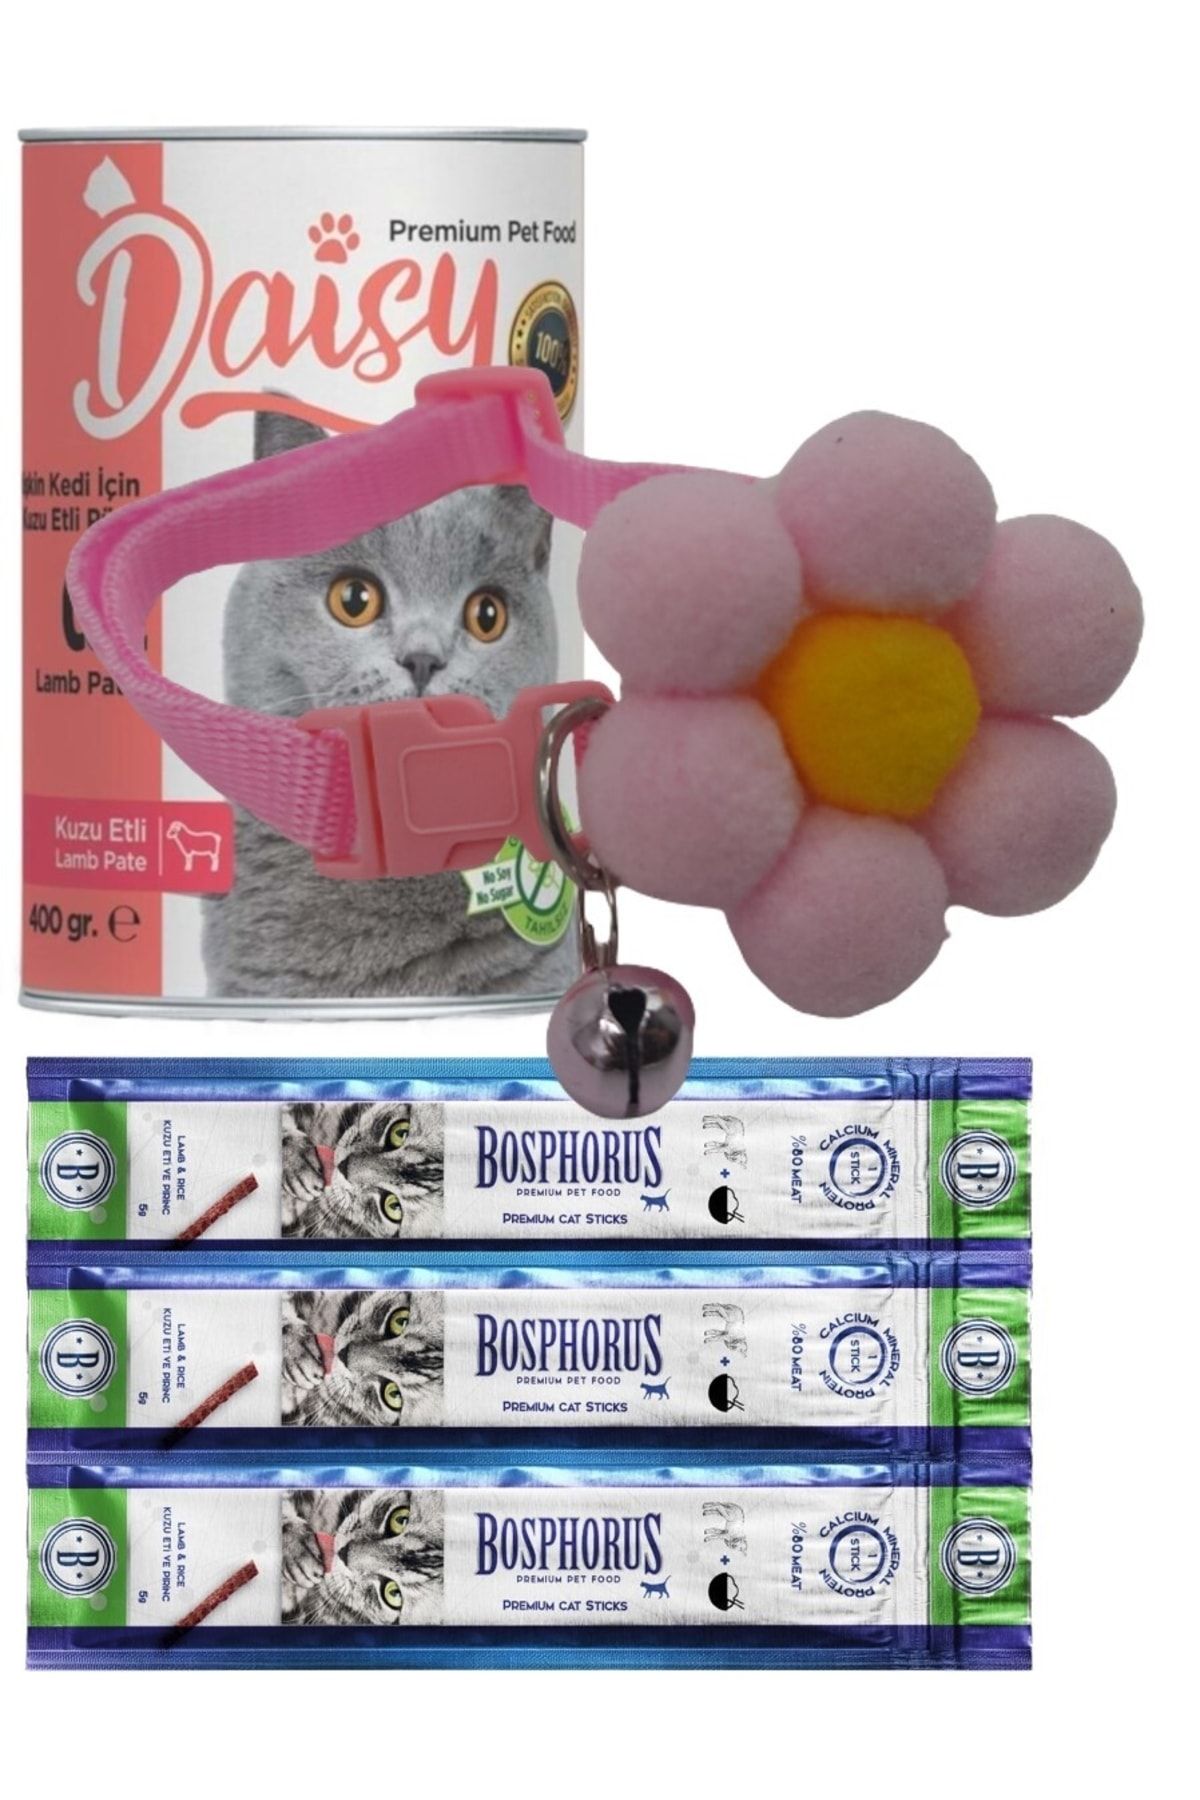 Daisy Kuzu Etli Kedi Konserve, Ödül Sticks Ve Flowers Boyun Tasma Seti Açık Pembe